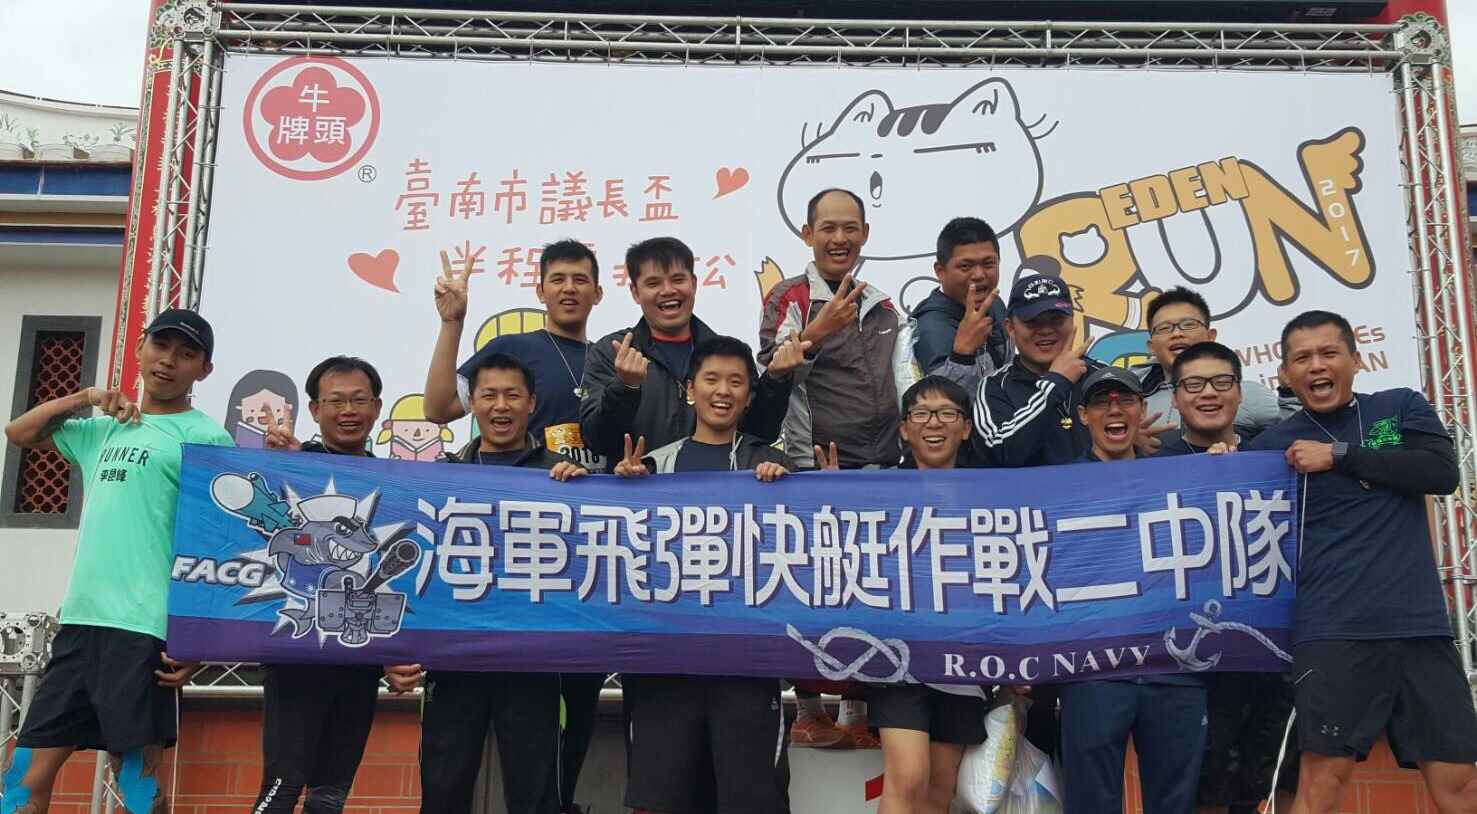 海軍一三一艦隊飛彈快艇作戰二中隊參加「台南市議長盃半程馬拉松」公益路跑活動-全隊合影